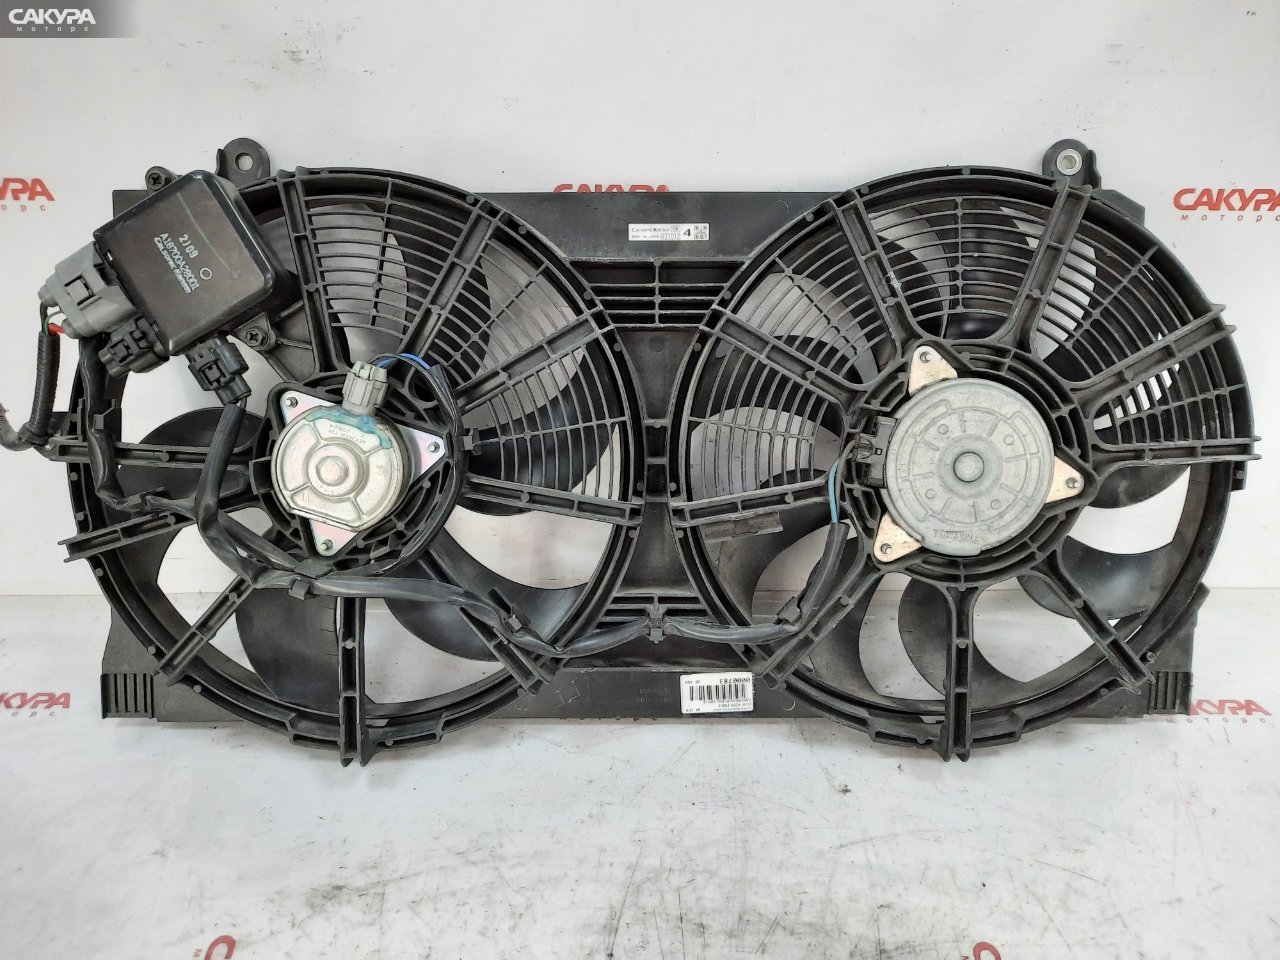 Вентилятор радиатора двигателя Nissan Leaf AZE0 EM57: купить в Сакура Красноярск.